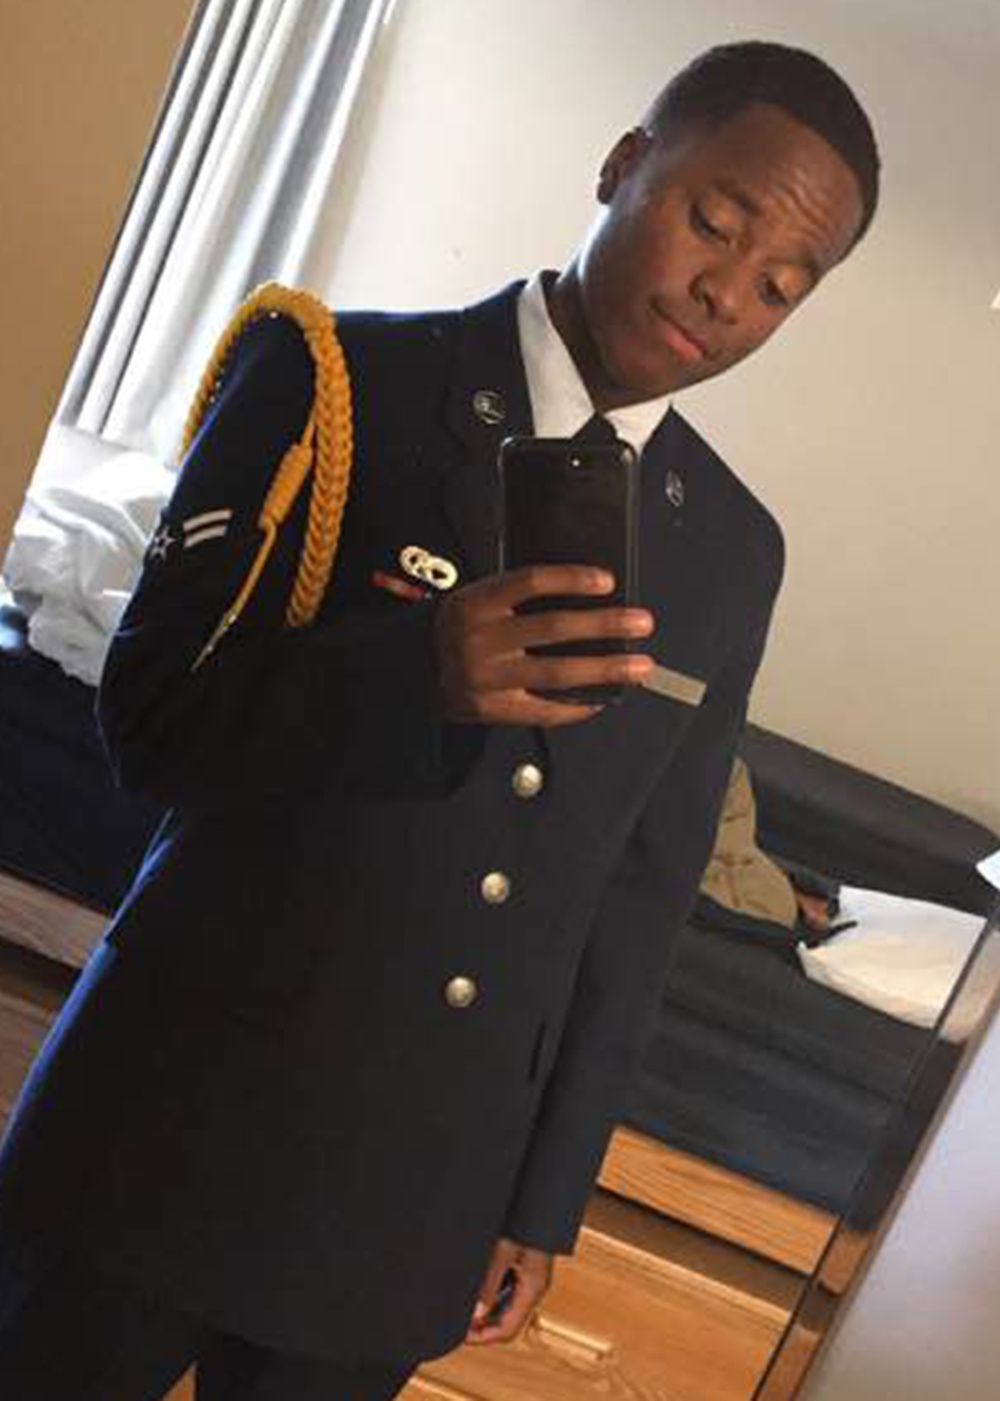 Senior Airman Elijah Evans